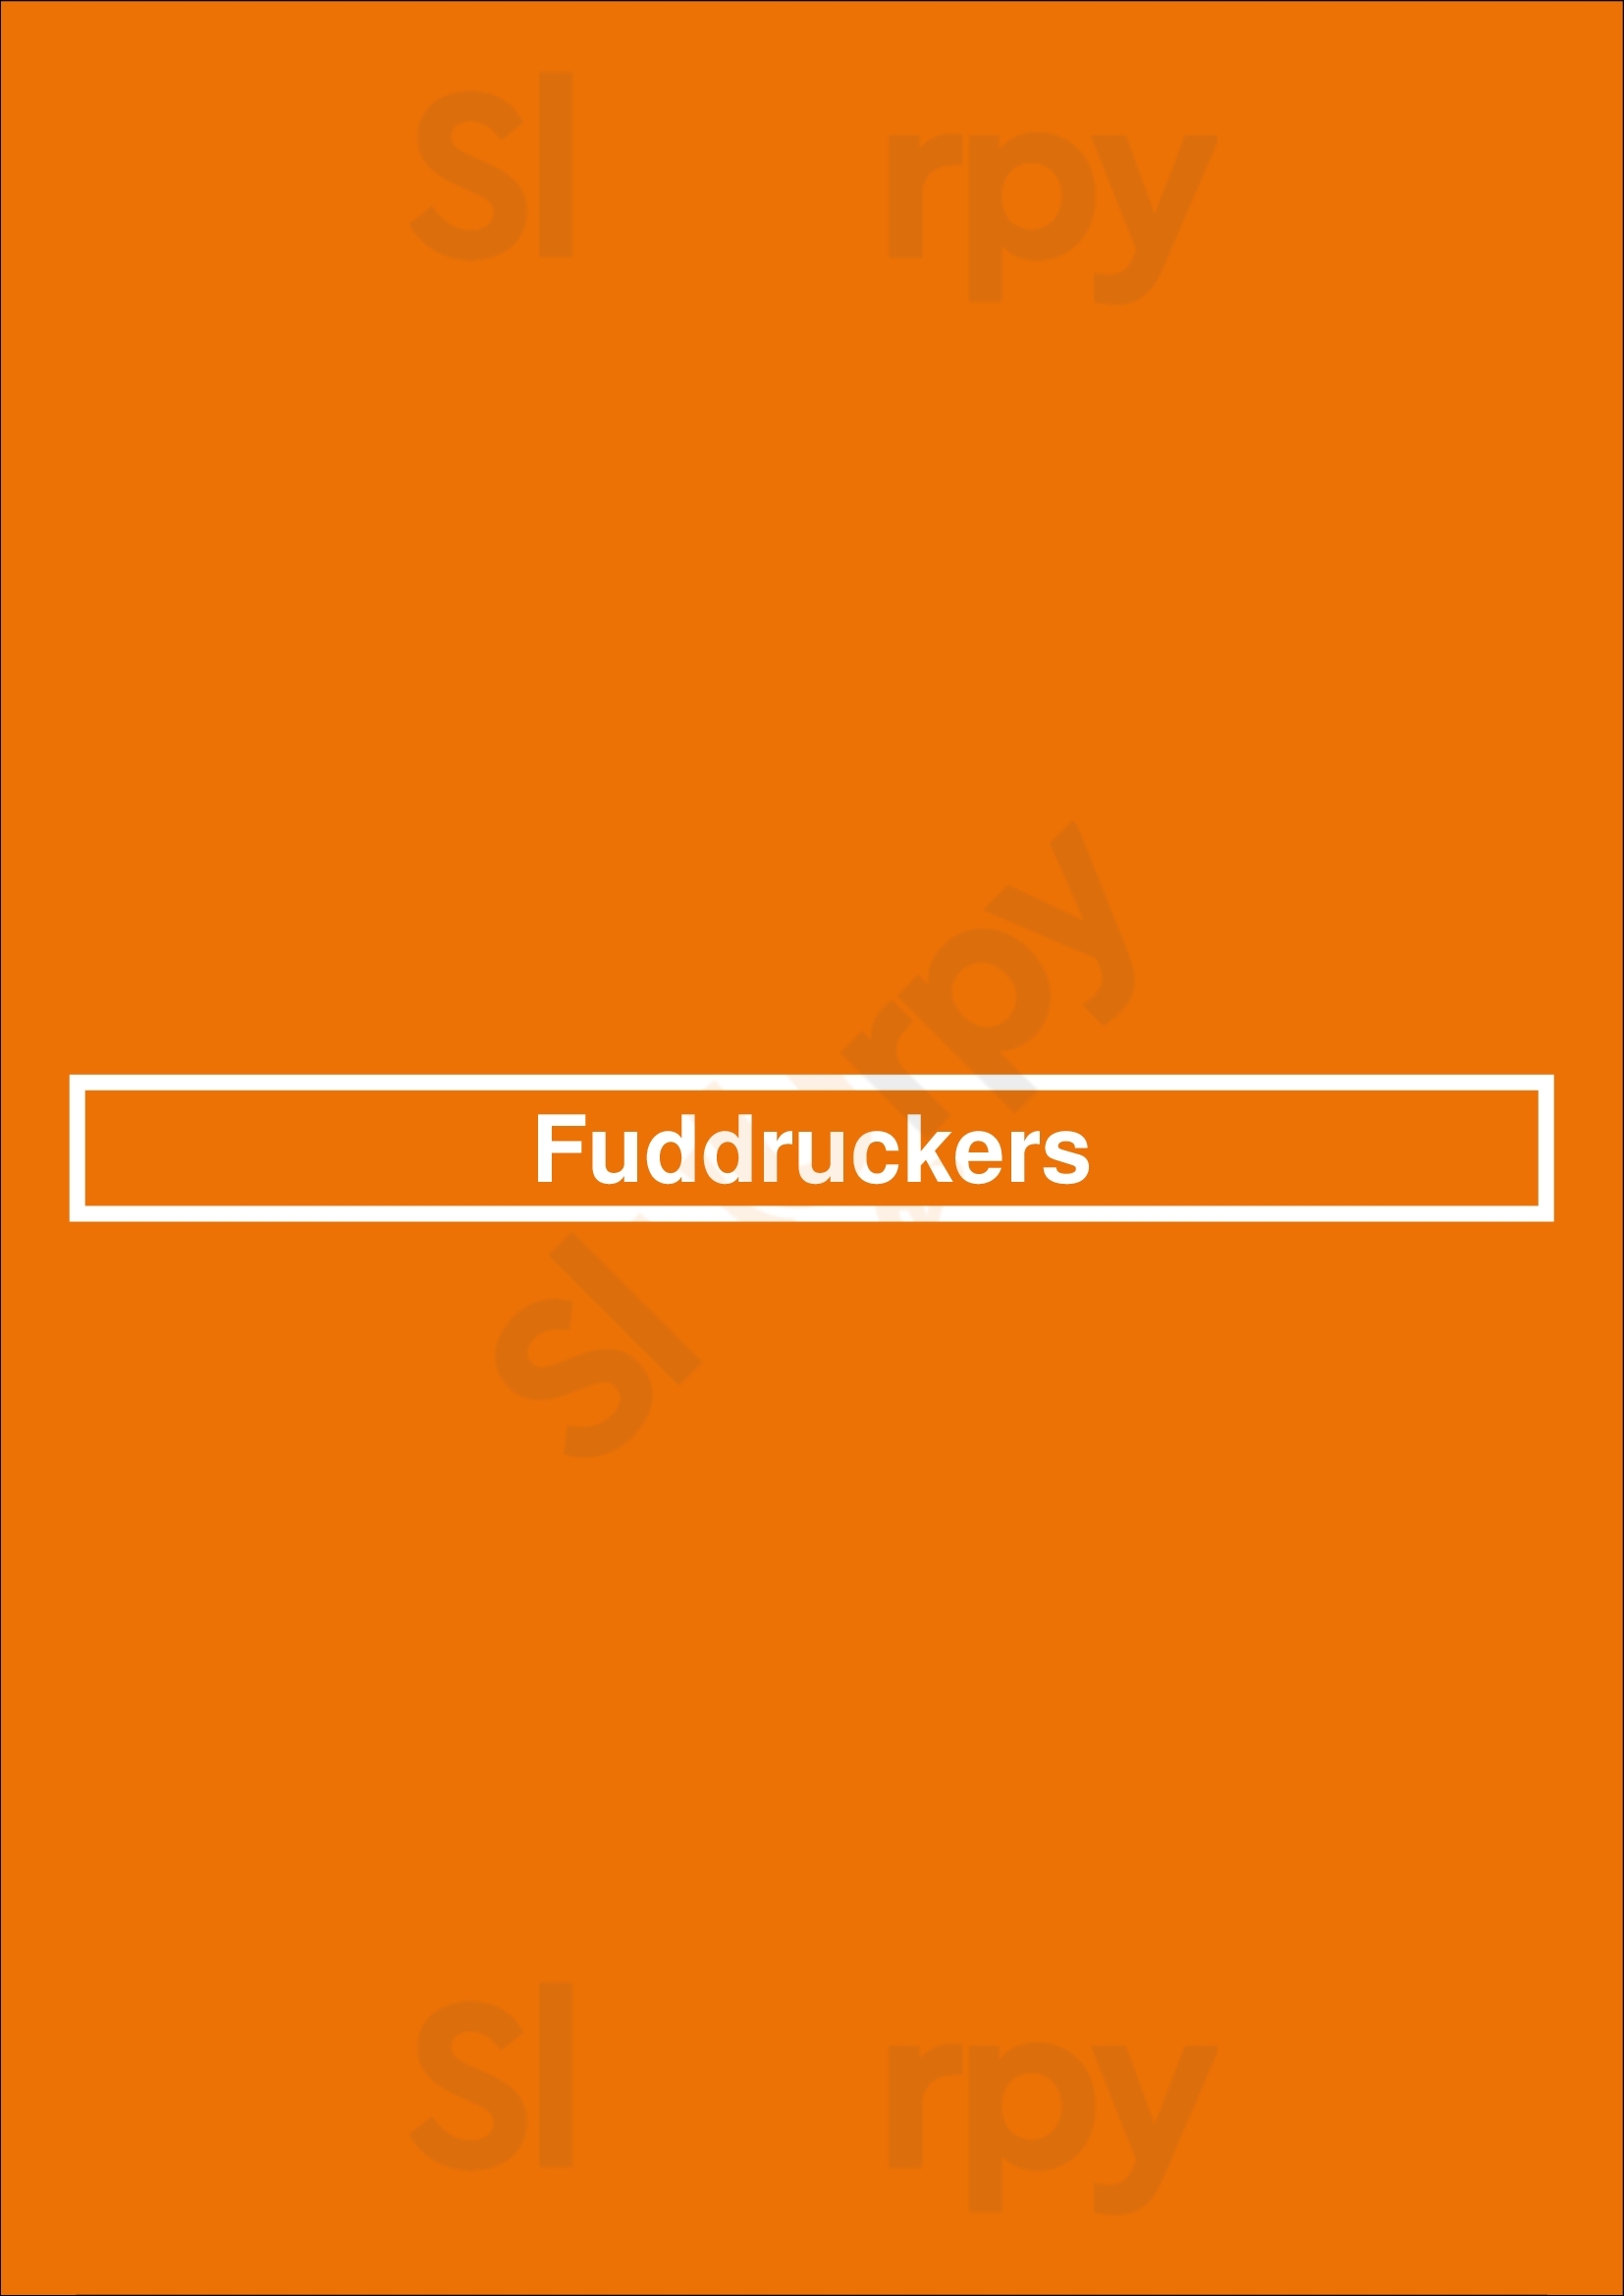 Fuddruckers San Antonio Menu - 1